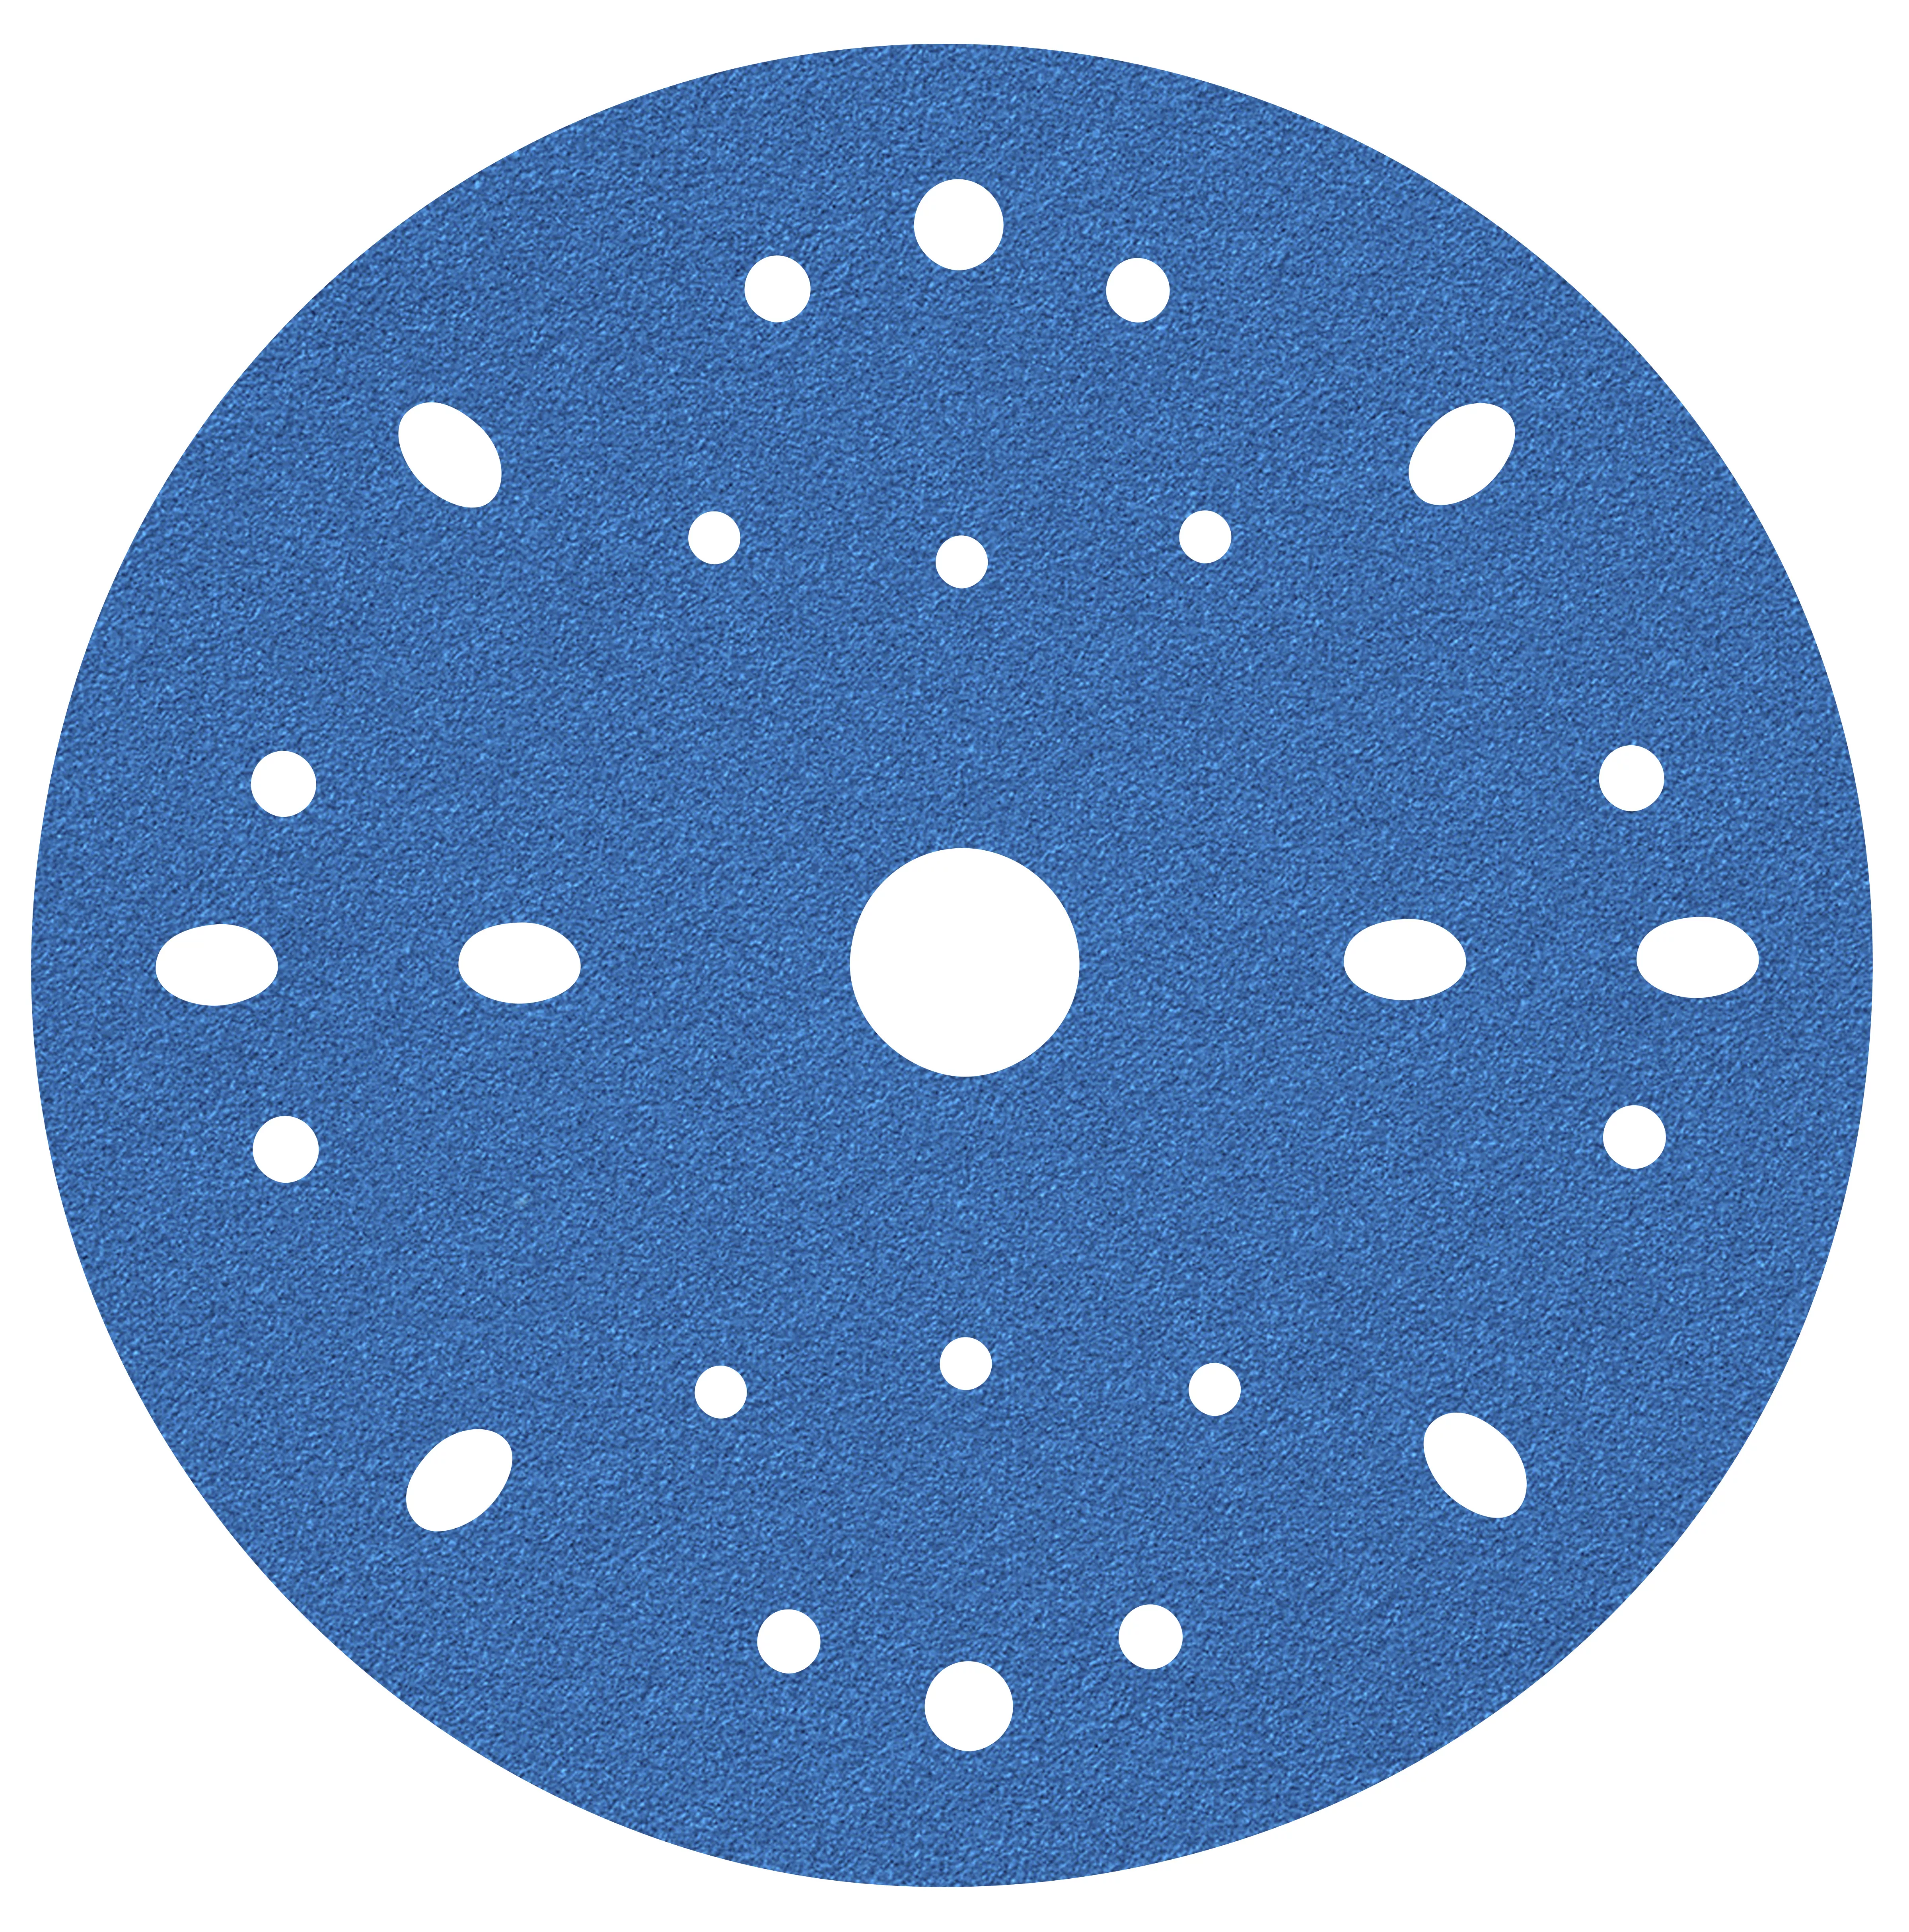 3M™ Hookit™ Blue Abrasive Disc Multi-hole, 36170, 6 in, 40 grade, 50
discs per carton, 4 cartons per case